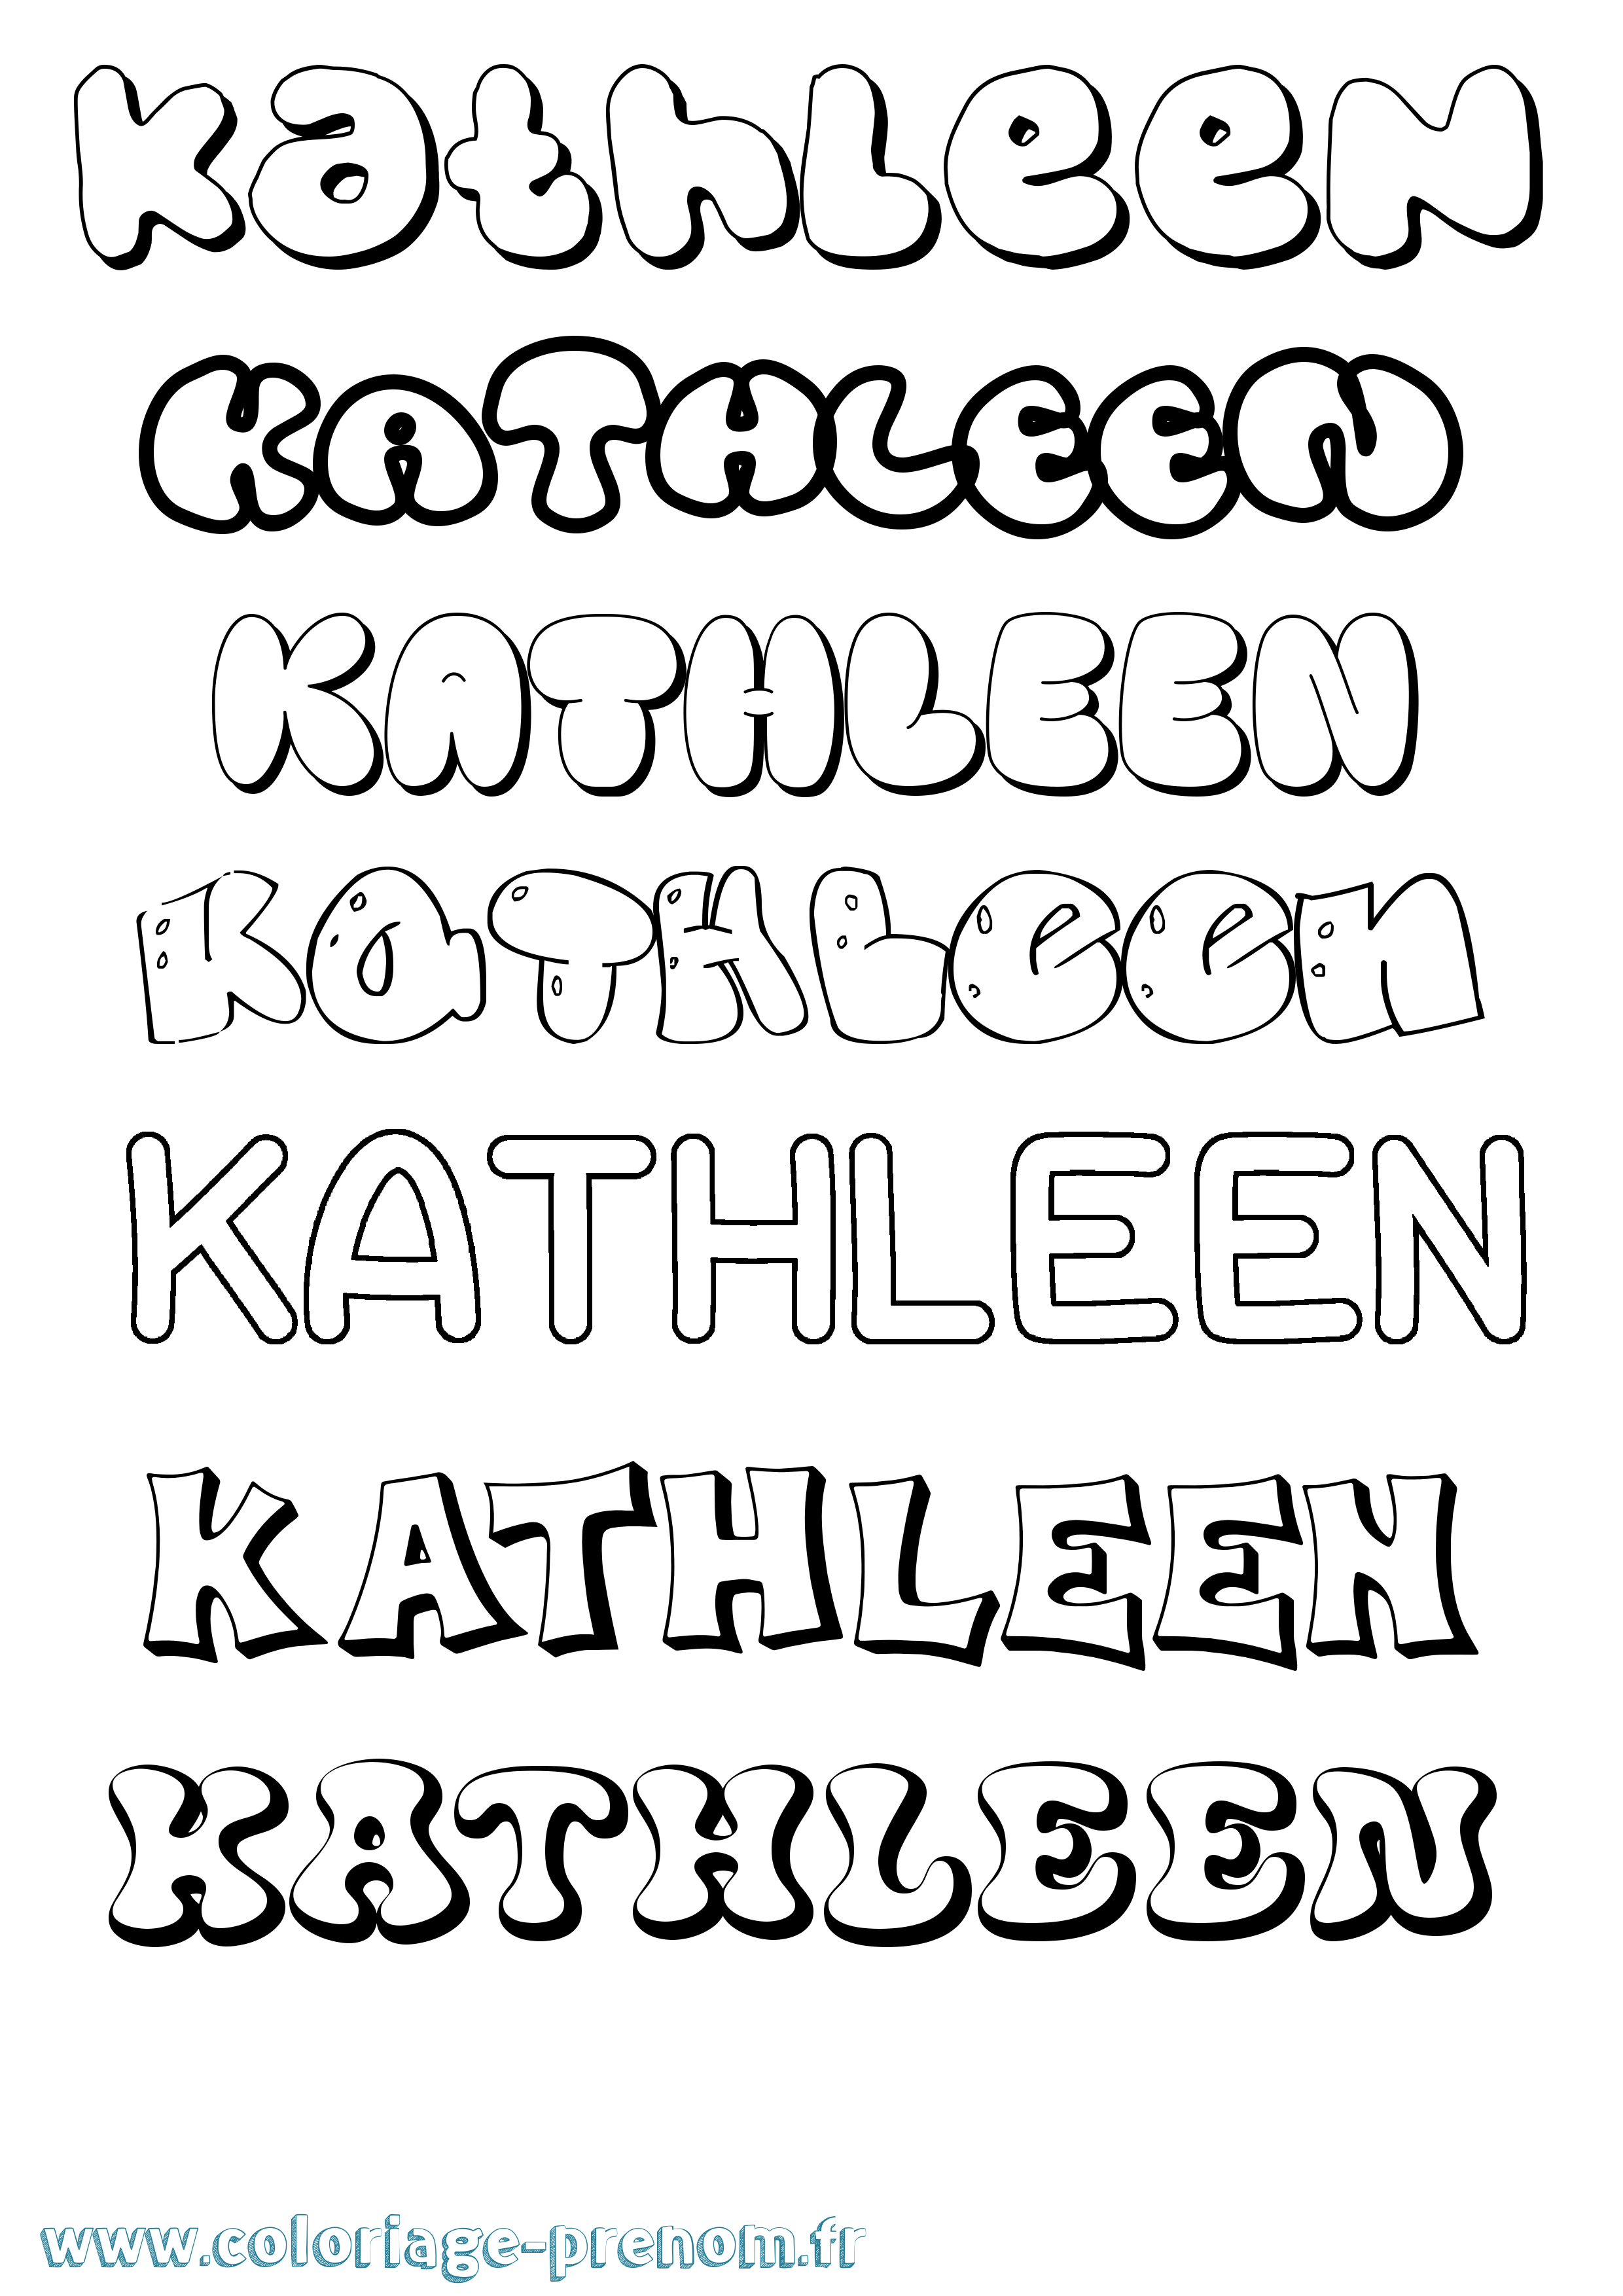 Coloriage prénom Kathleen Bubble